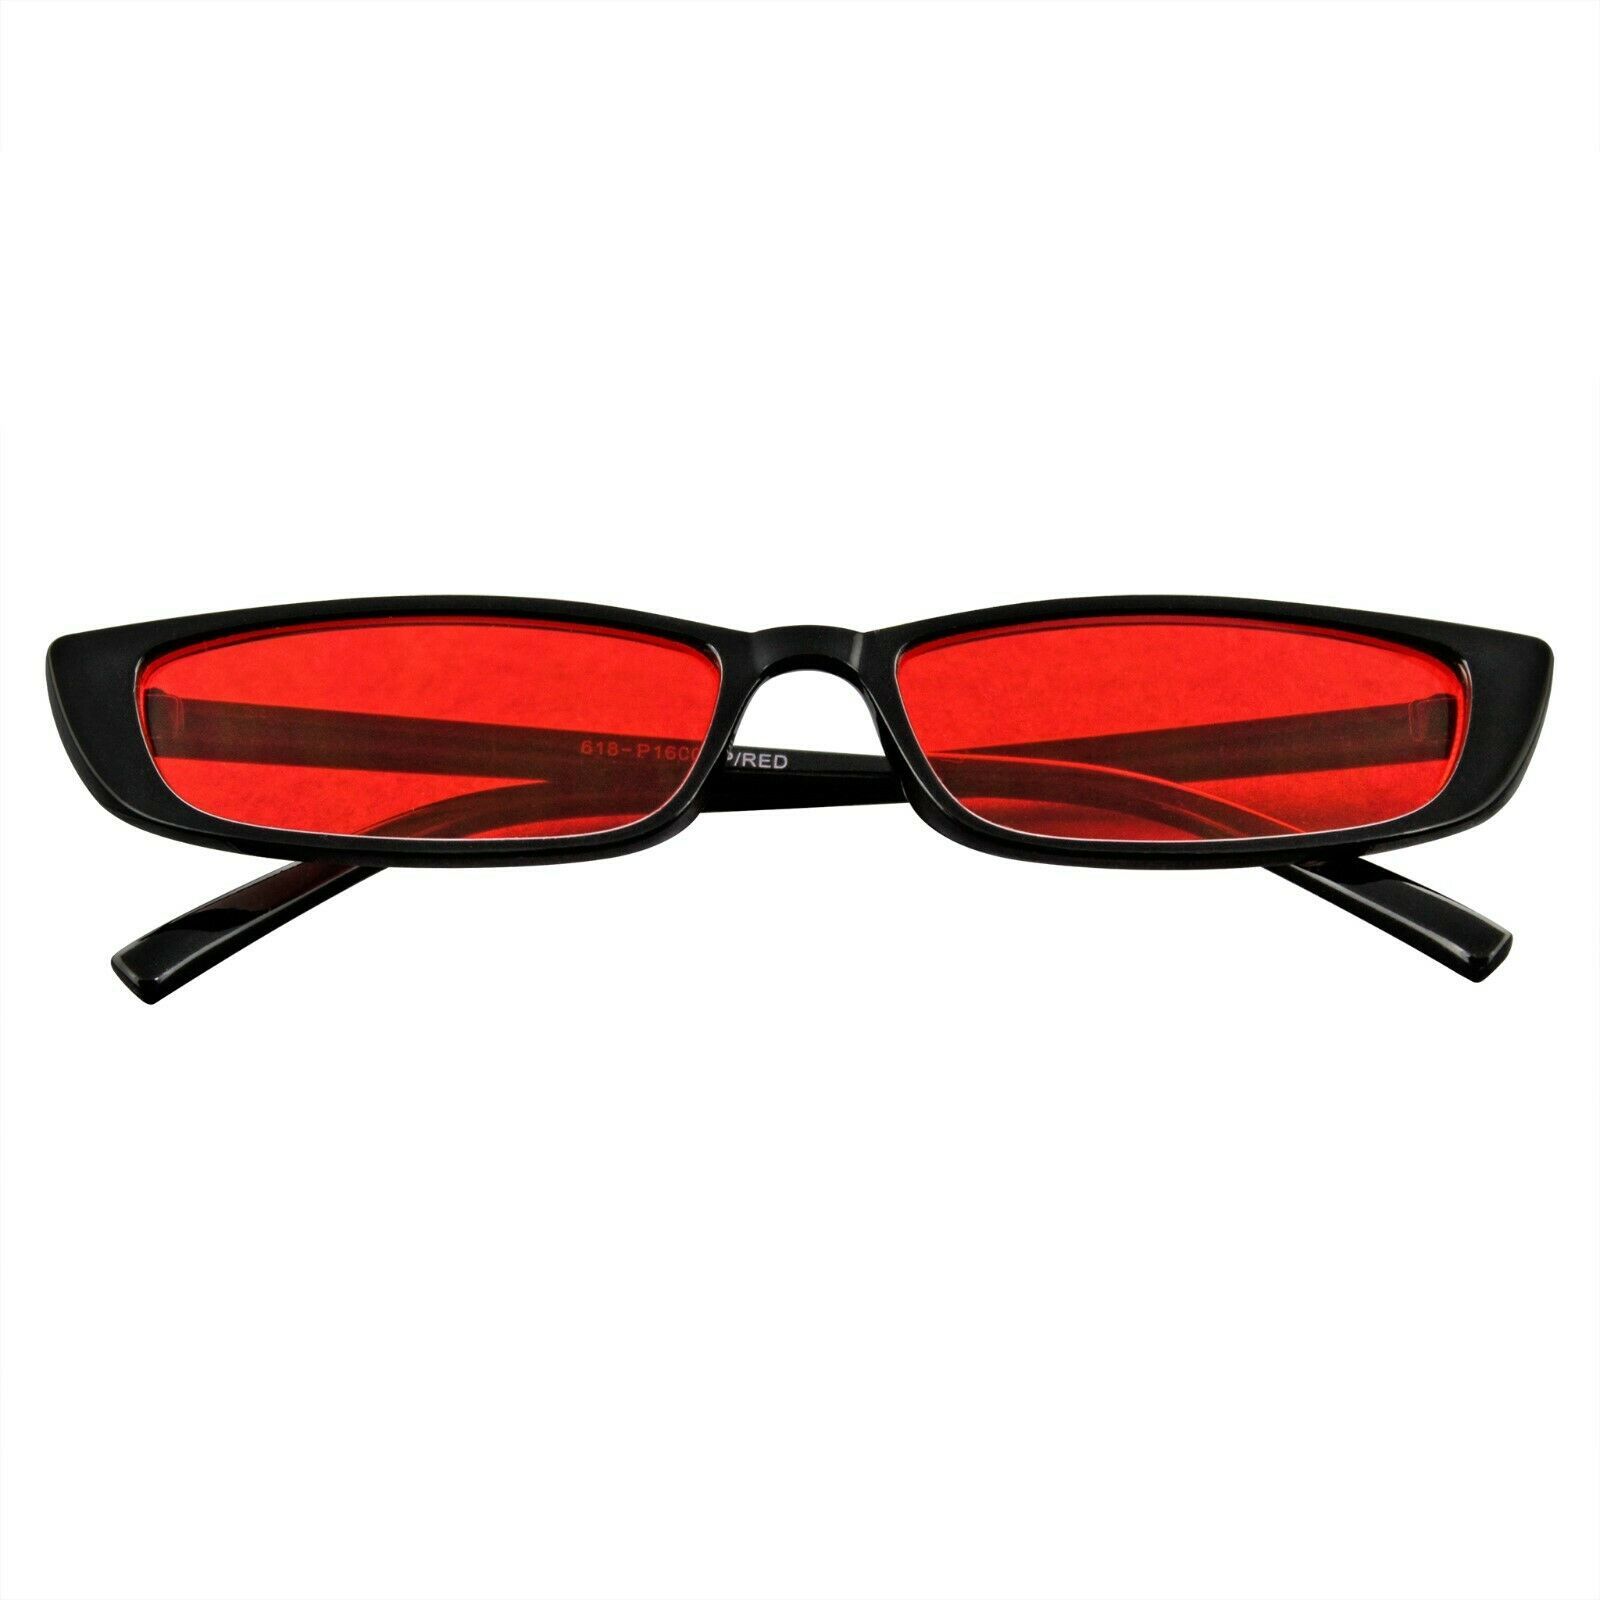 Rectangular Pequeño Sunglasses Hombre Mujer Vintage Retro Modernas UV - $11.21